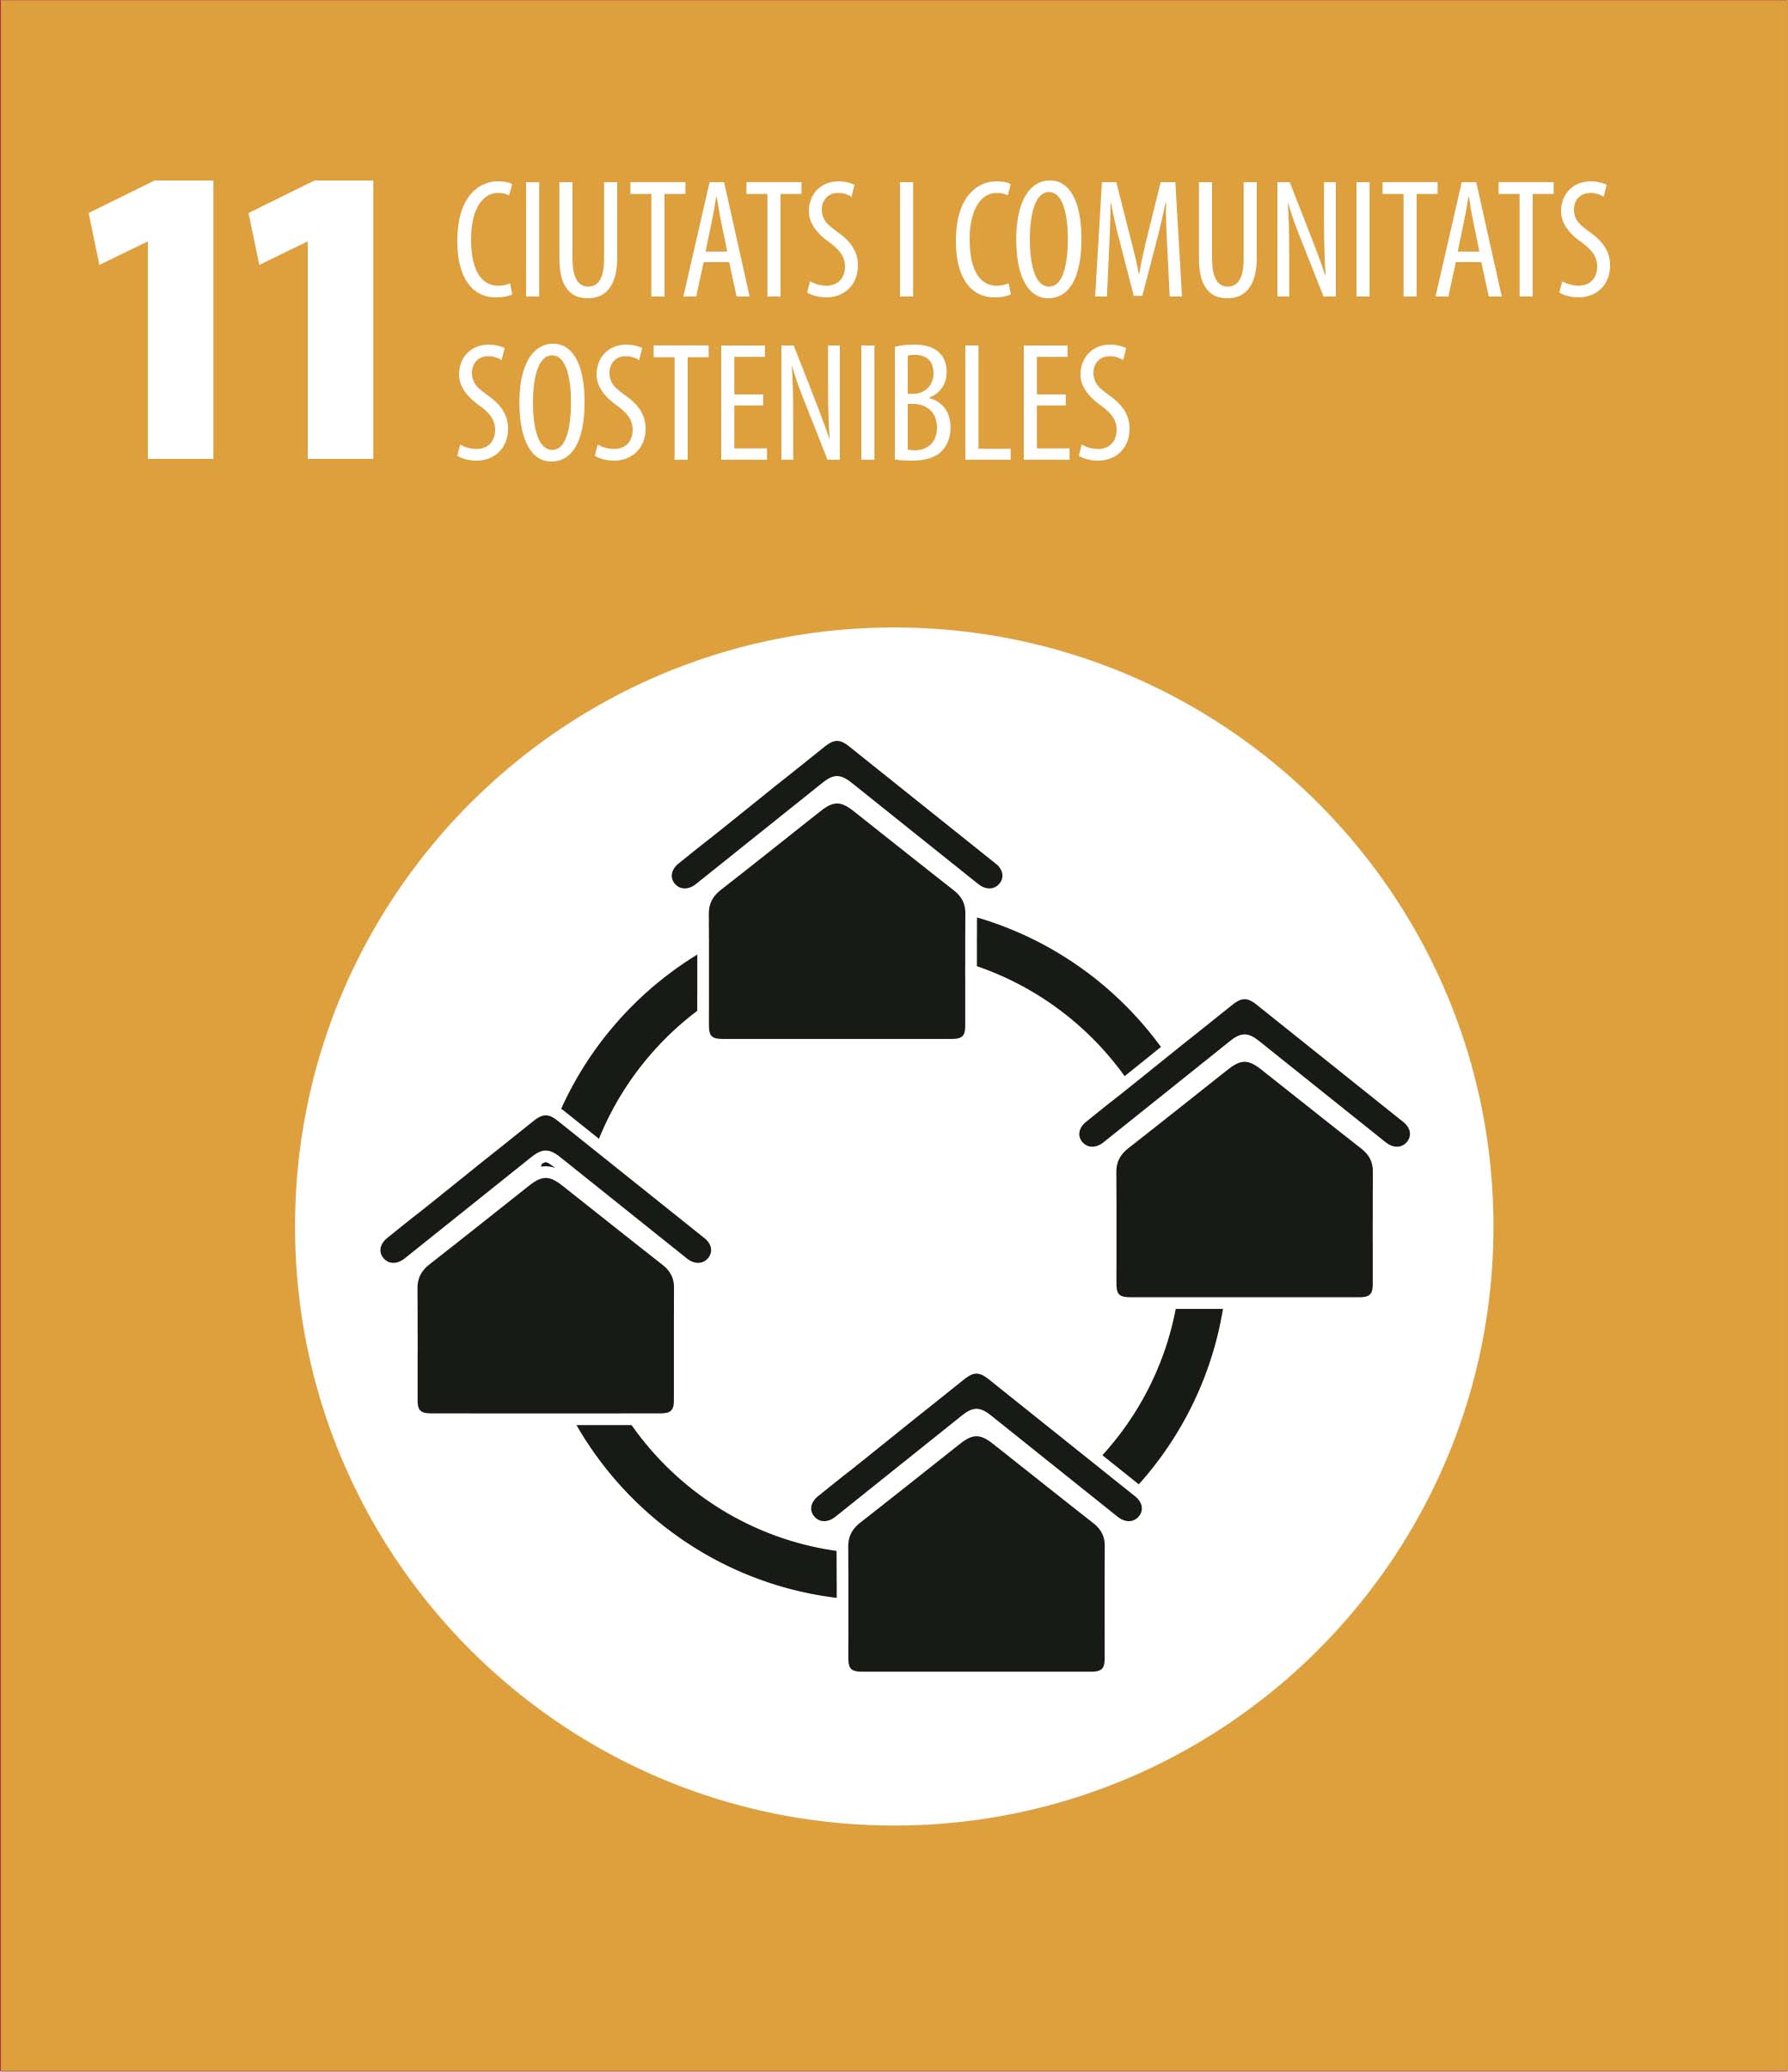 ODS 11 Ciutats i comunitats sostenibles